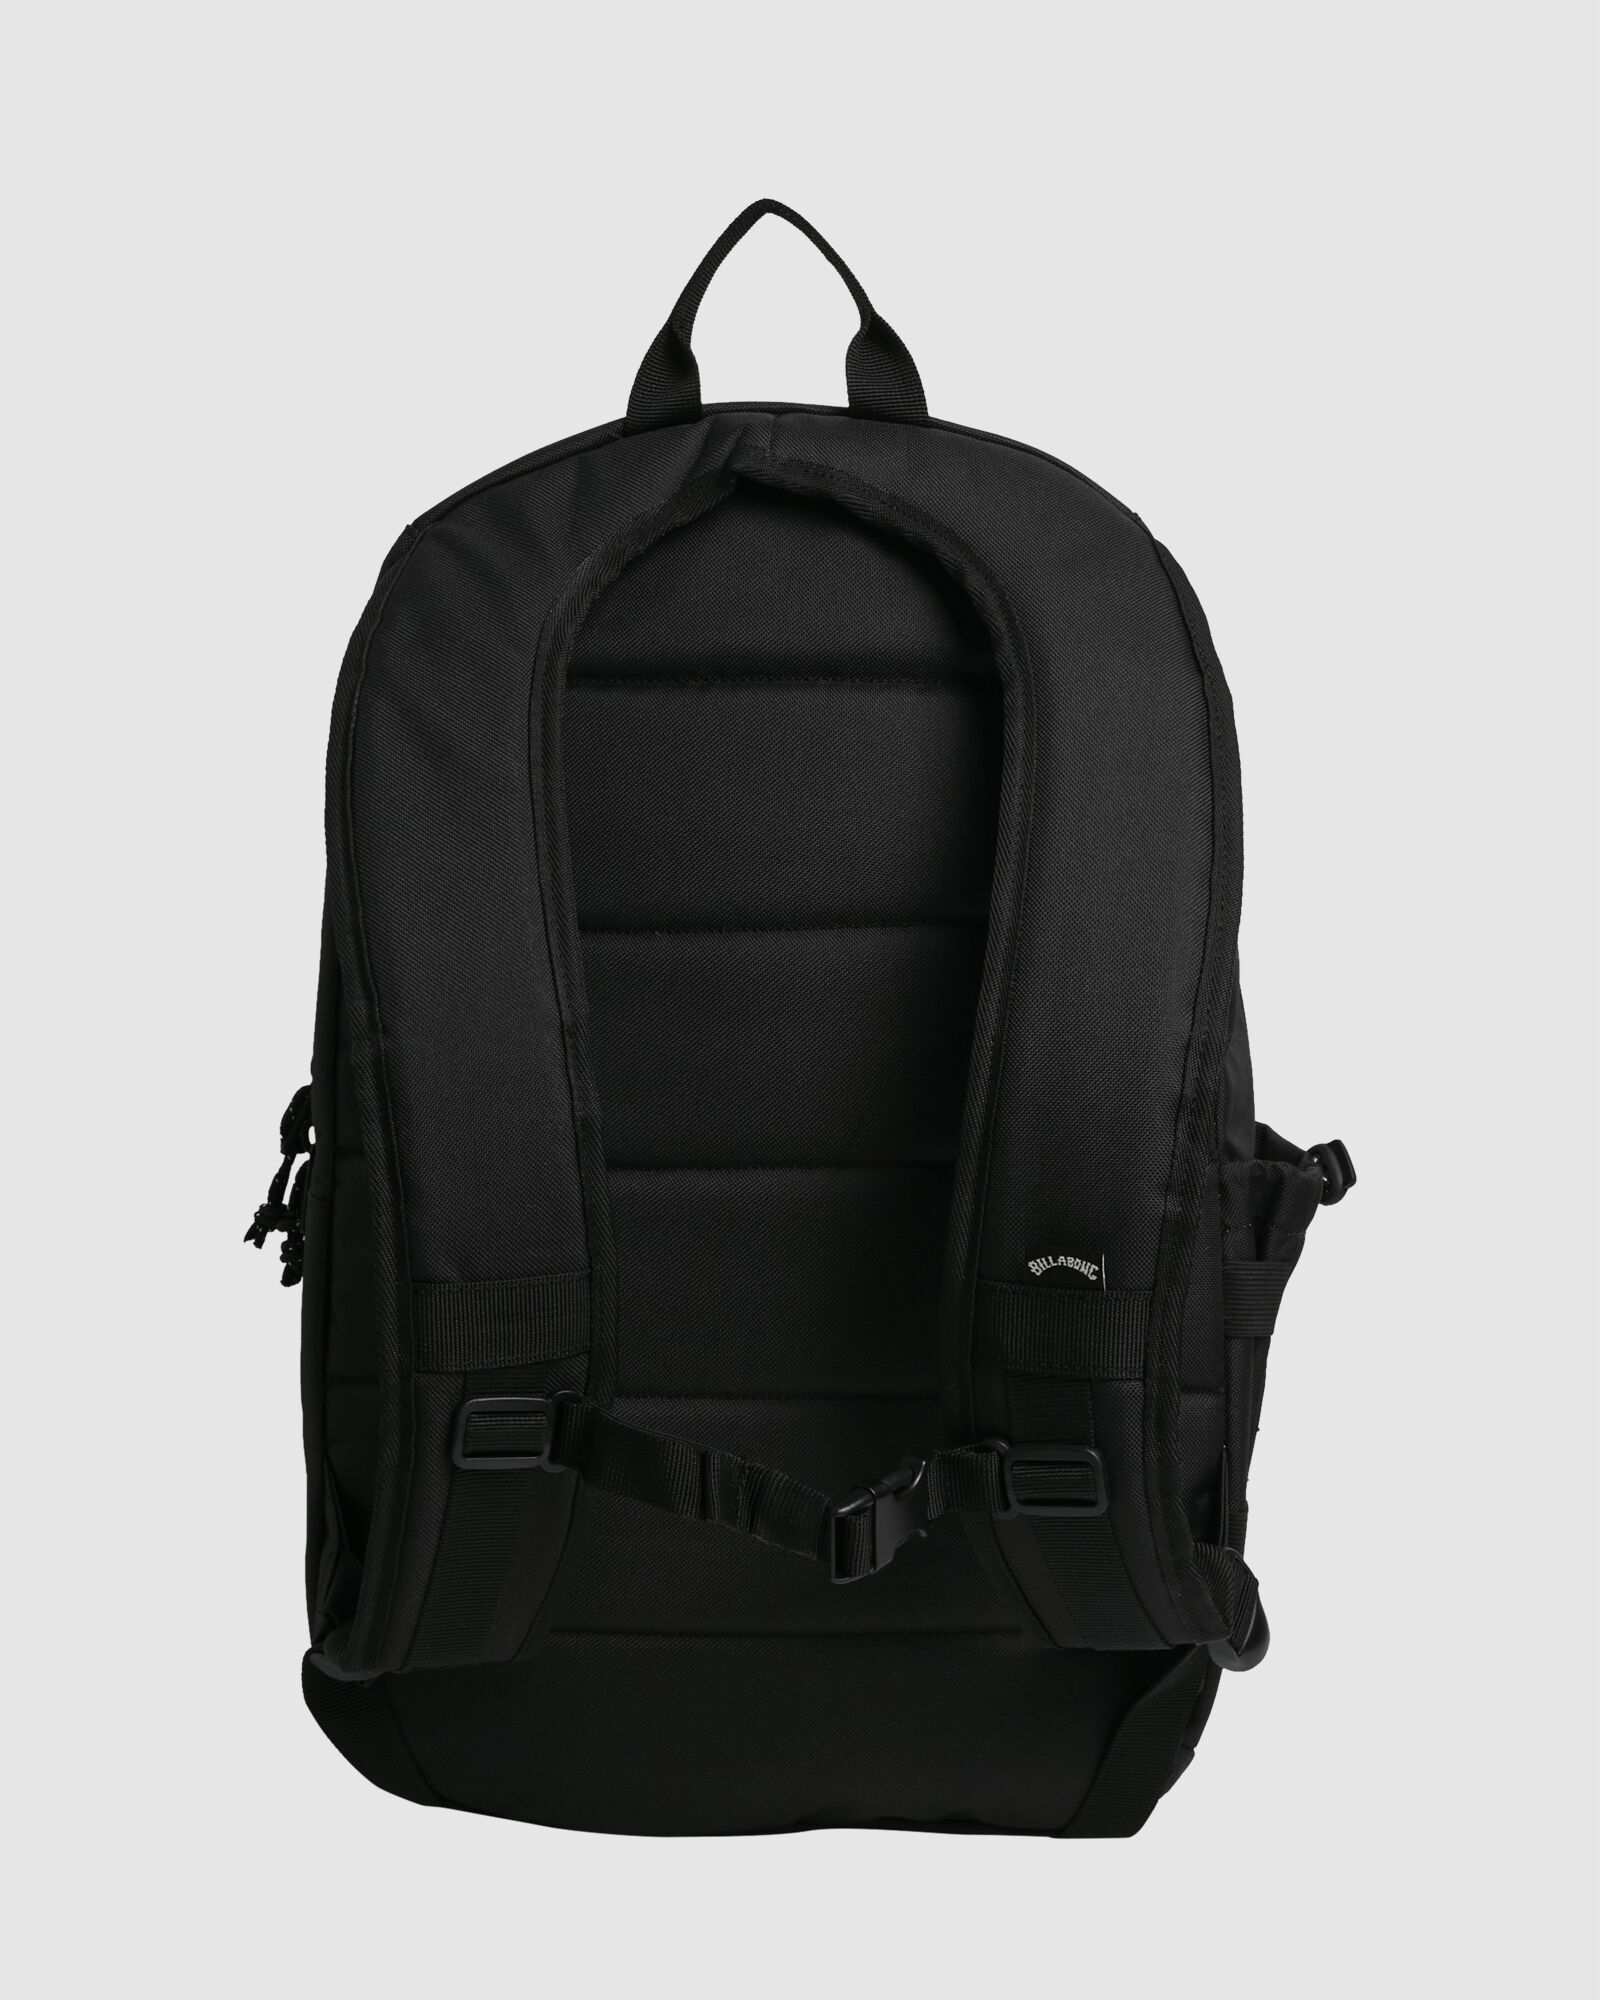 Norfolk Backpack 27L